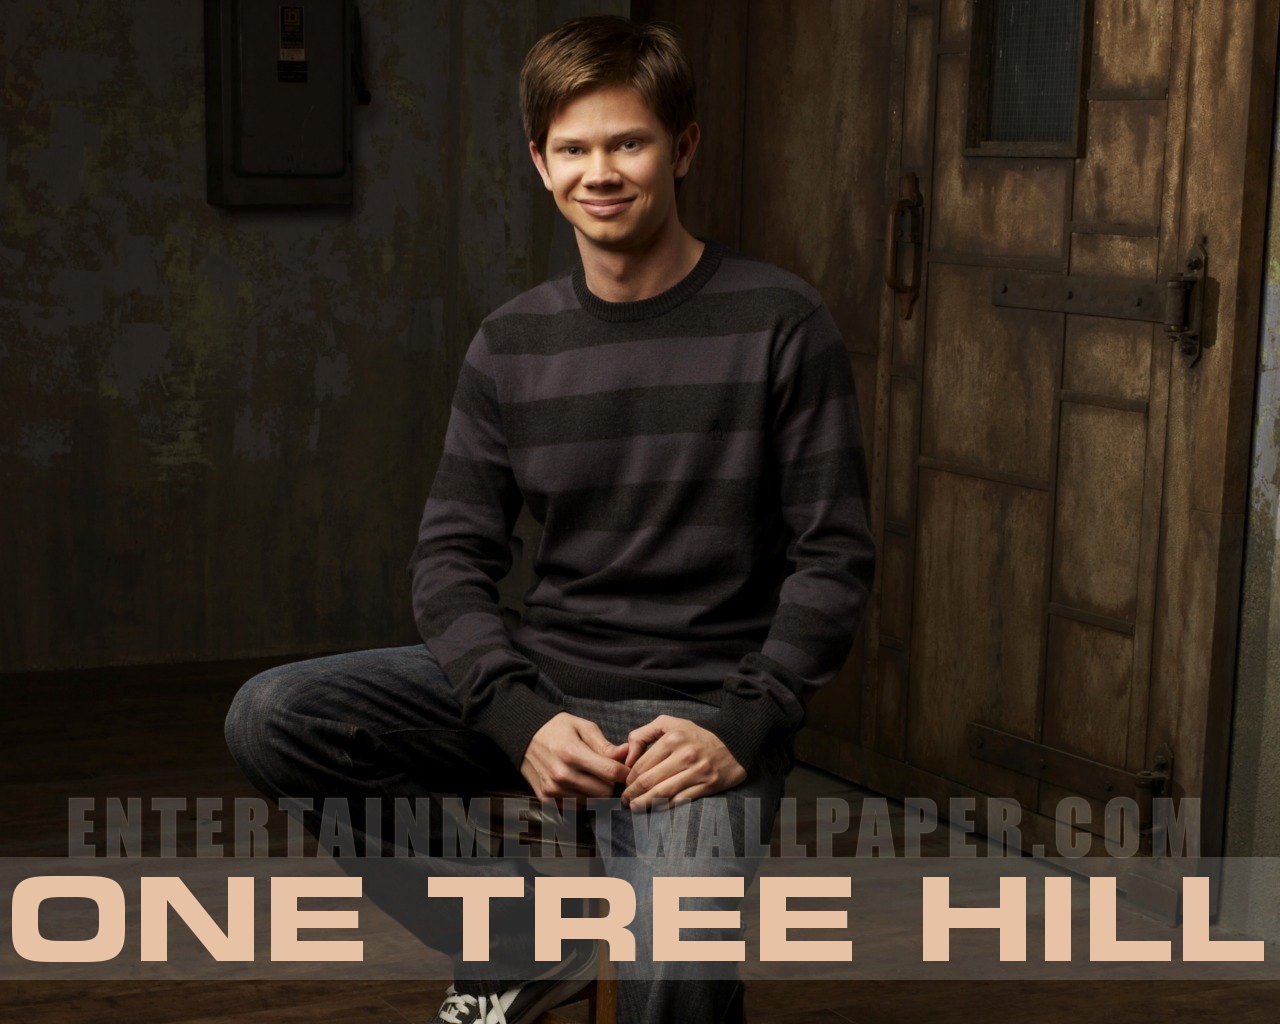 One Tree Hill wallpaper #6 - 1280x1024